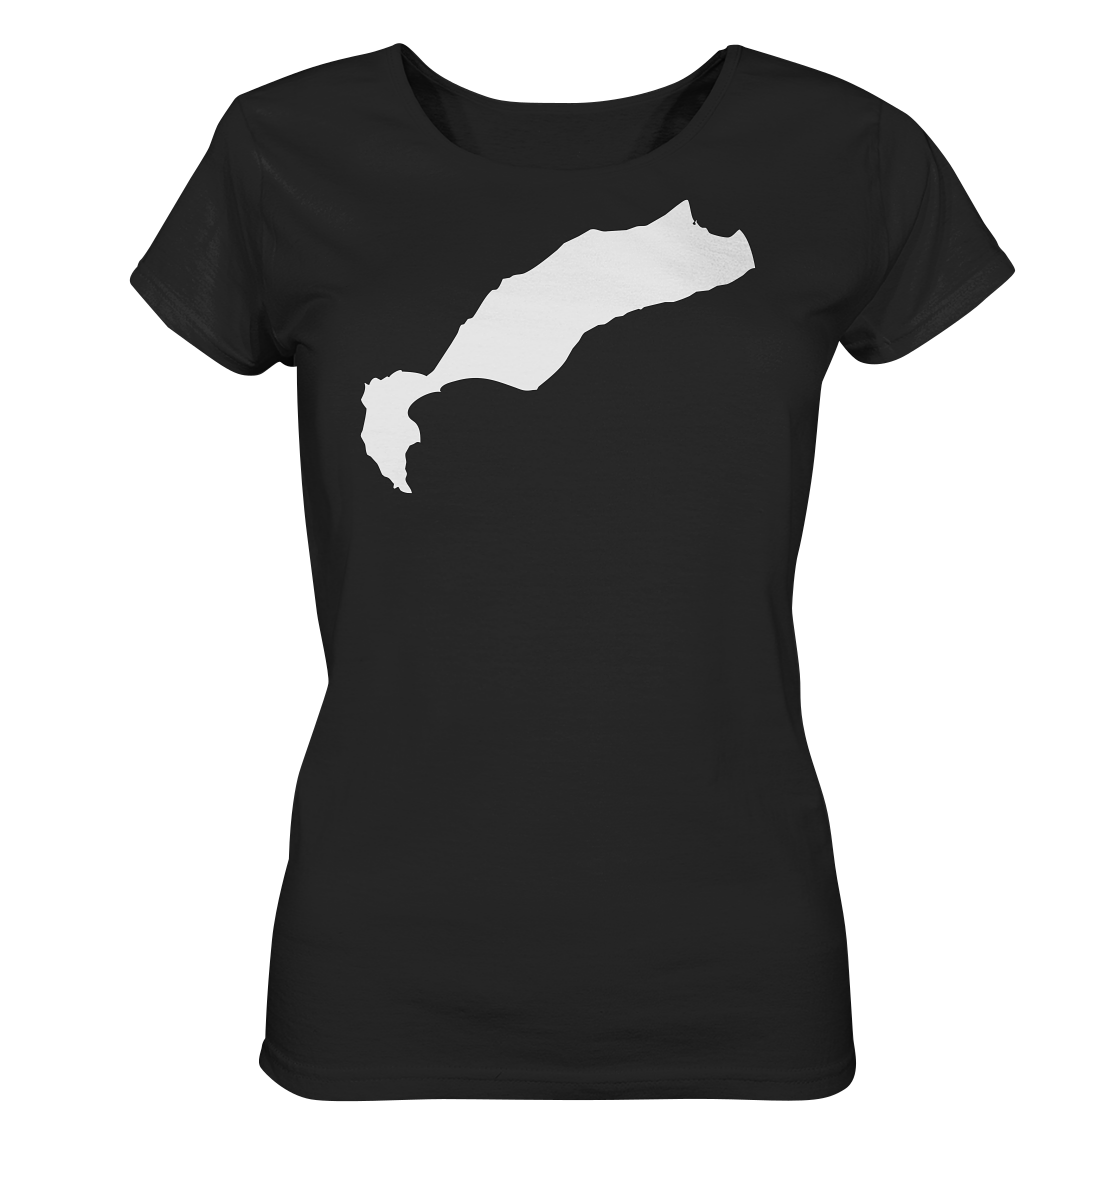 Kos Insel Silhouette - Ladies Organic Shirt